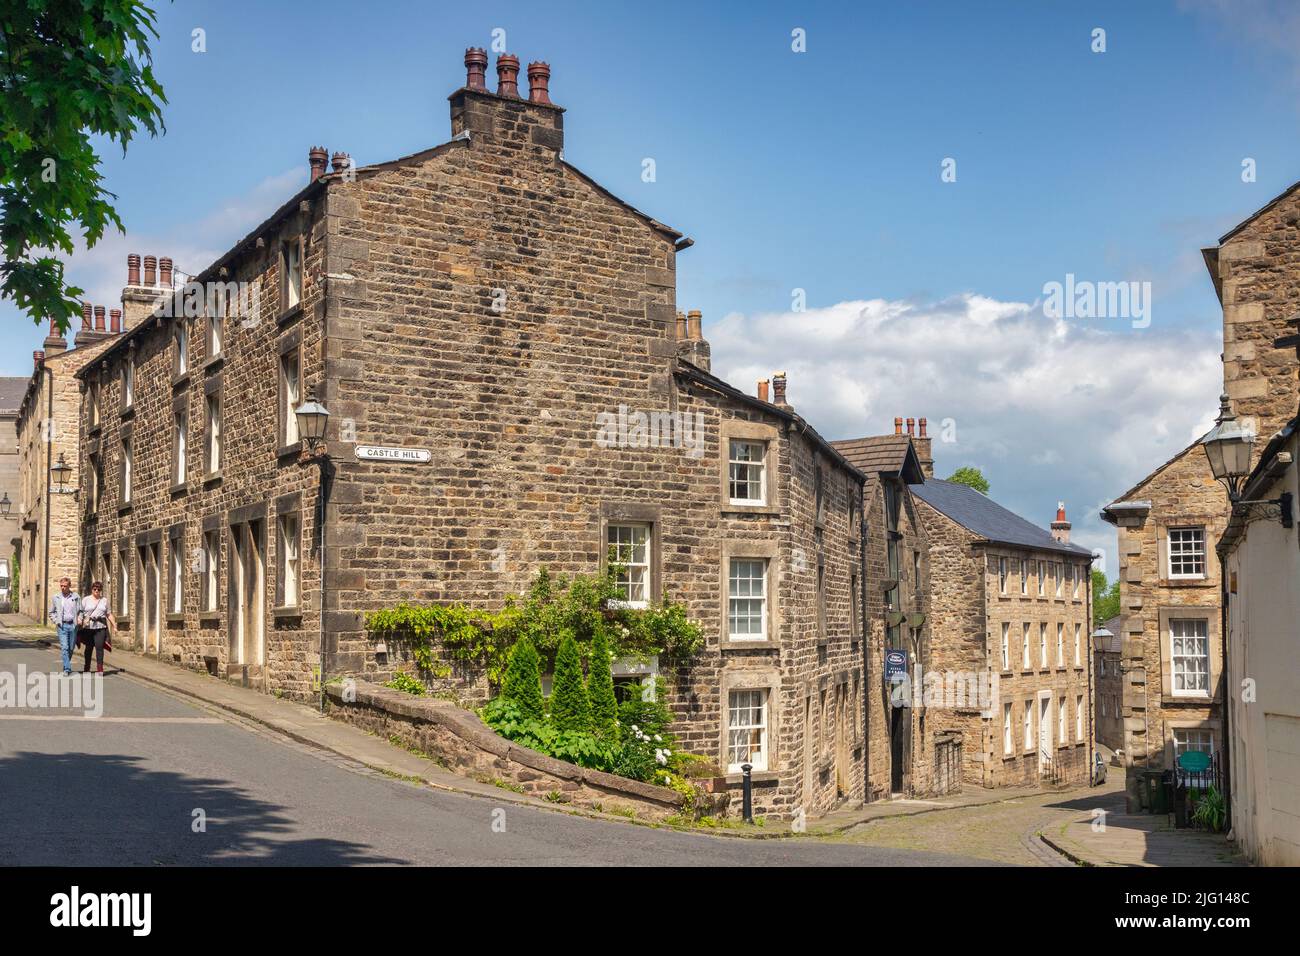 12 July 2019:Lancaster, UK - viktorianische Reihenhäuser in der Castle Hill Gegend von Lancaster an einem schönen Sommertag. Stockfoto